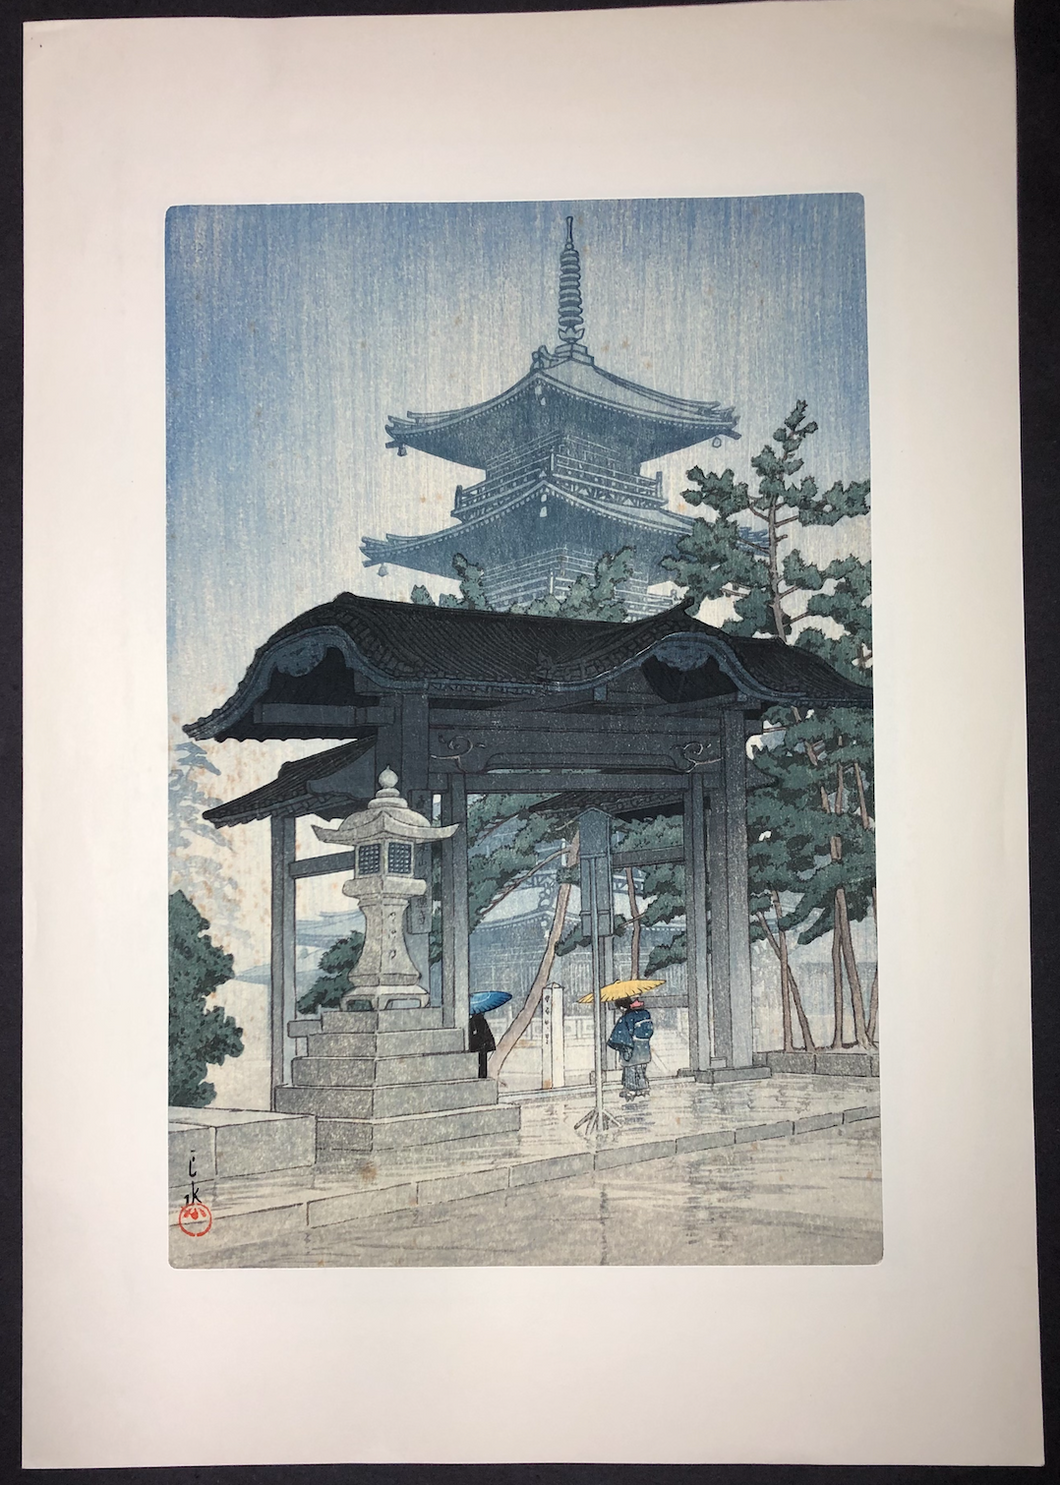 Zentsuji temple in the rain